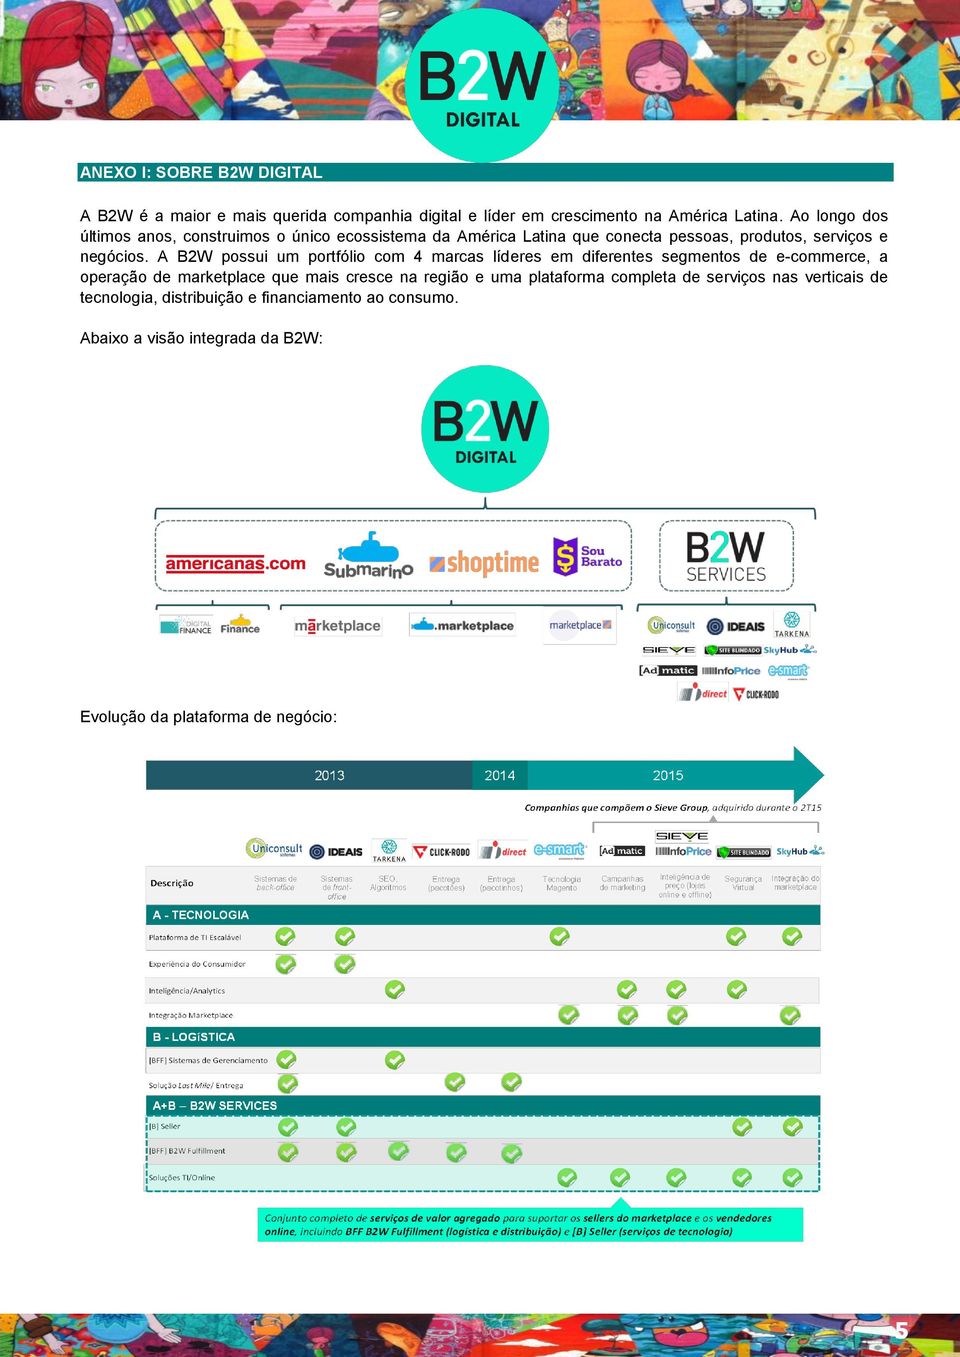 A B2W possui um portfólio com 4 marcas líderes em diferentes segmentos de e-commerce, a operação de marketplace que mais cresce na região e